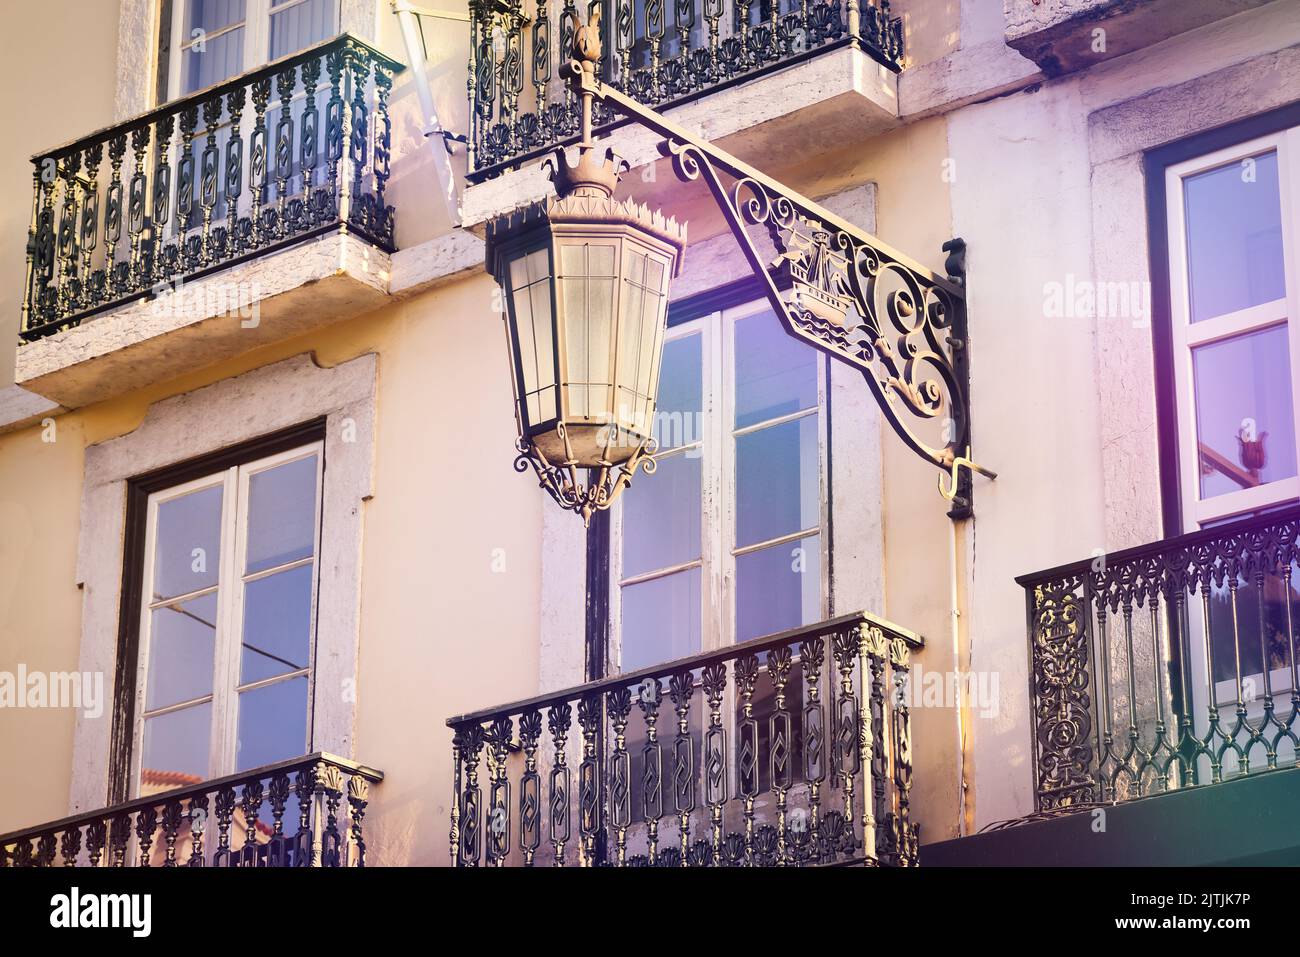 Lanterne vintage et balcons en fer forgé à Lisbonne. Architecture typique de la capitale du Portugal. Banque D'Images